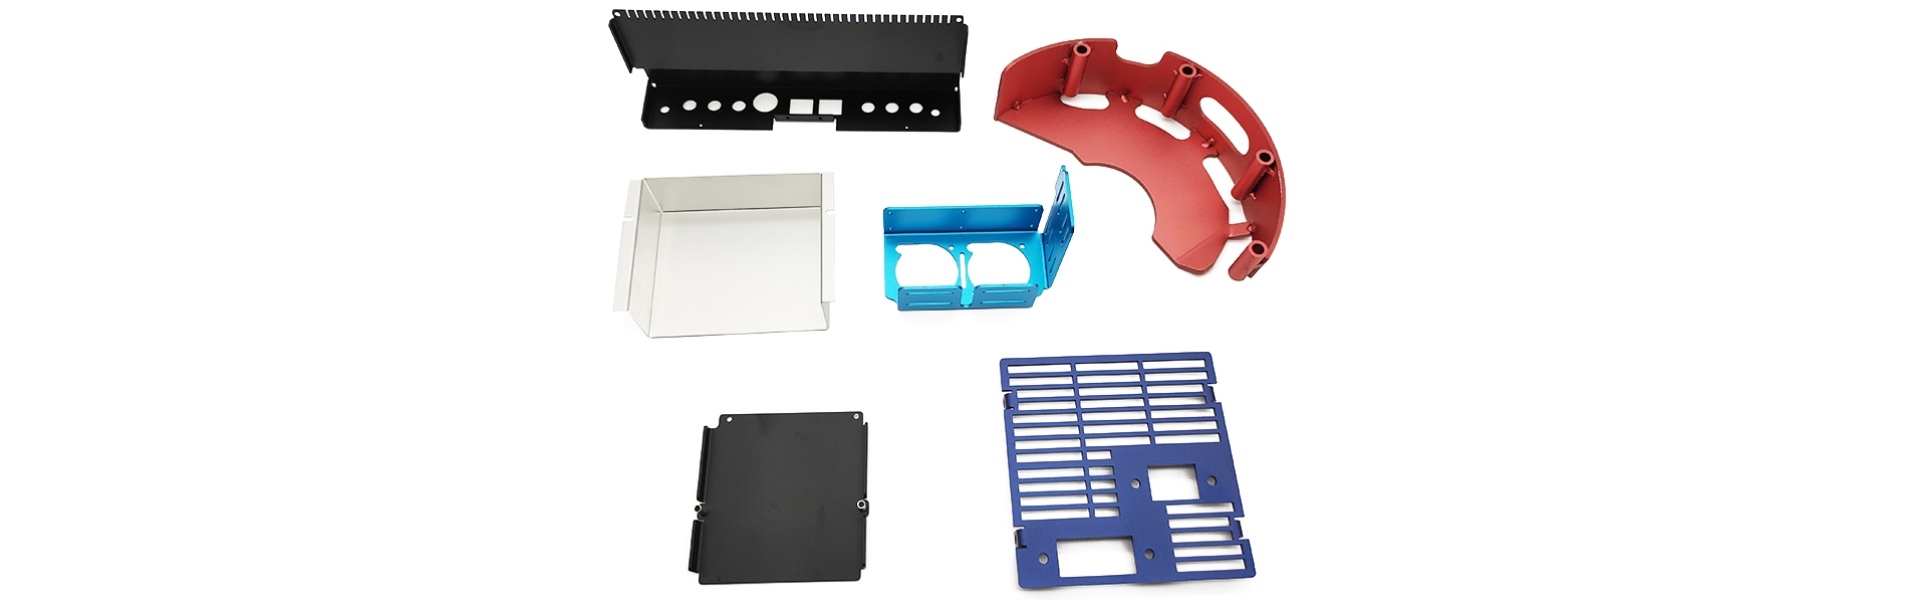 Fabricage met metaalmetalen, metalen stempelen, CNC -bewerkingsservice,Xucheng Precision Sheet metal Products Co., LTD